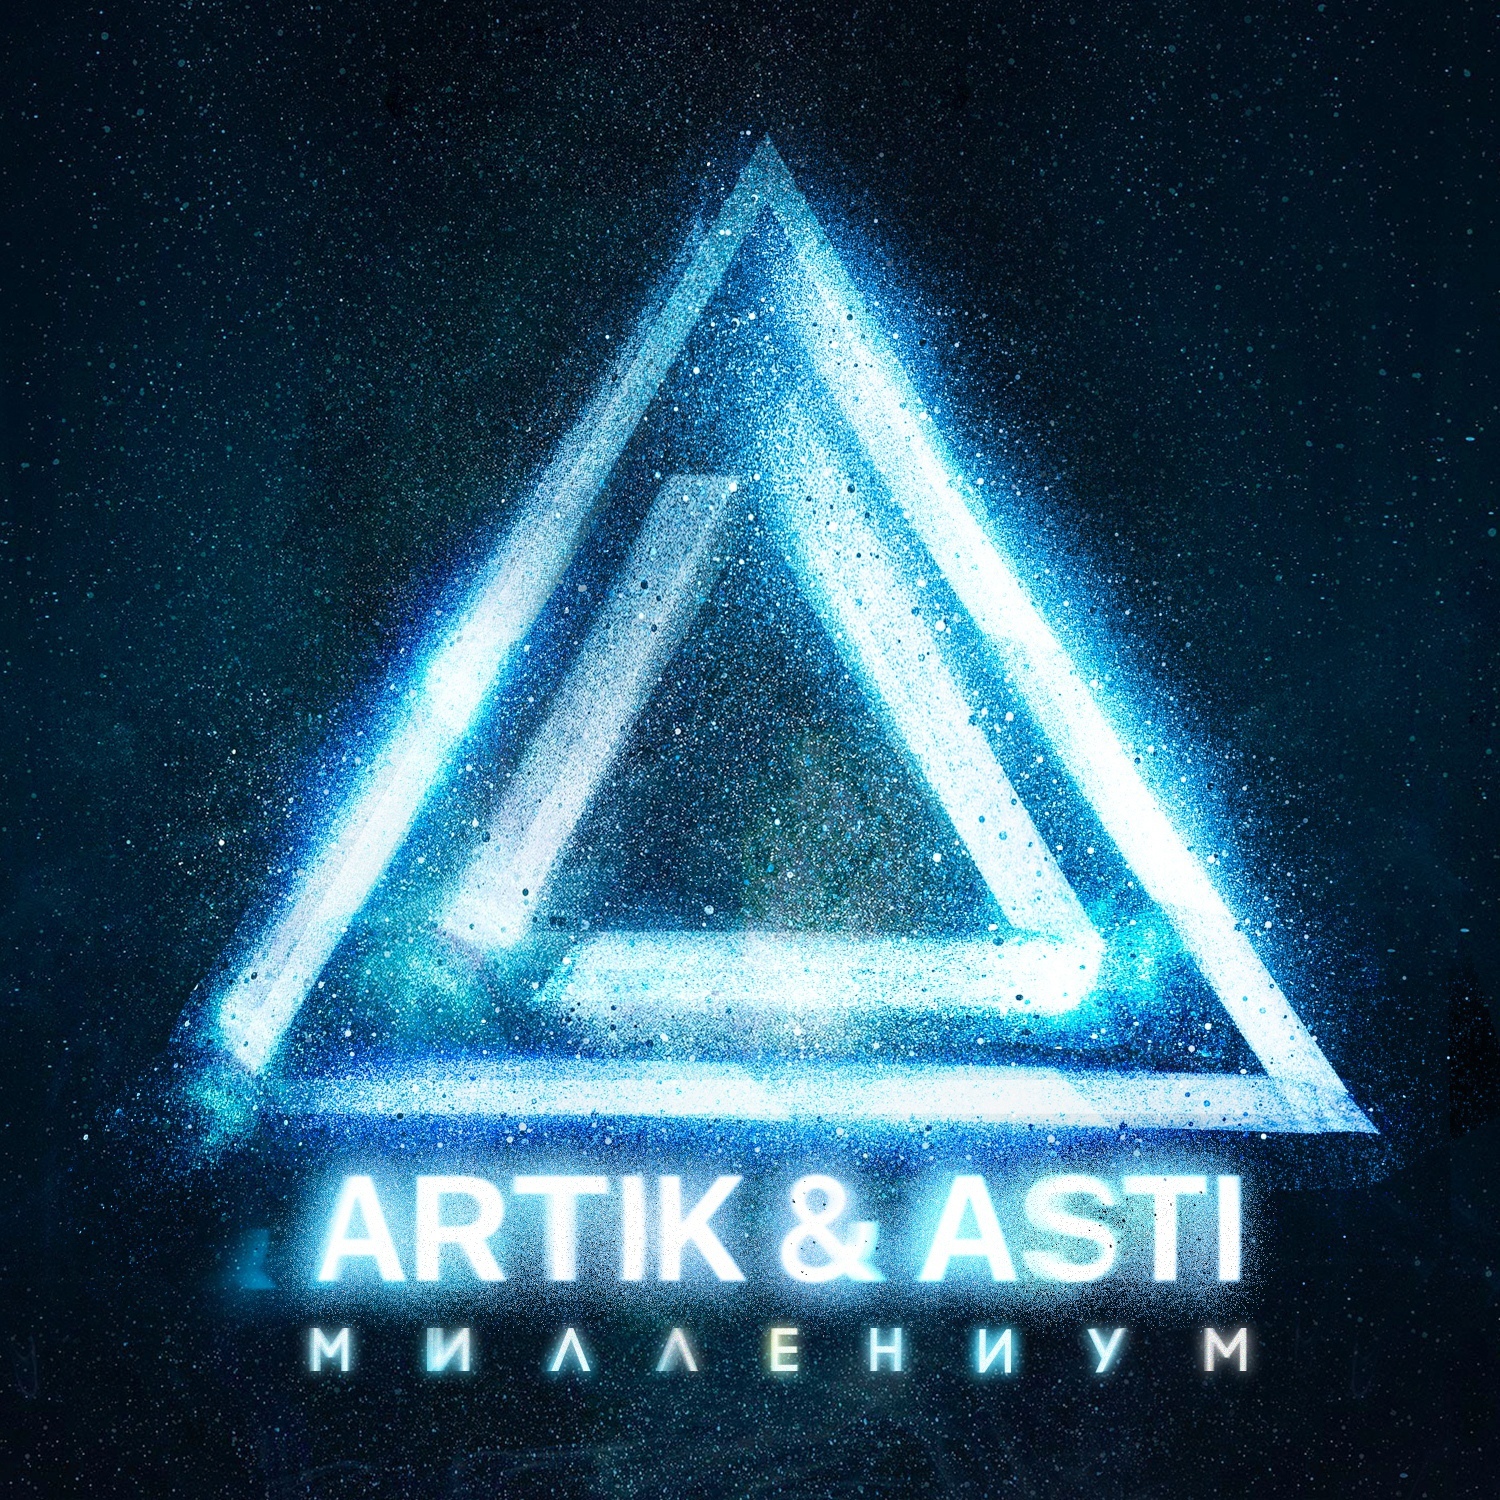 Artik & Asti